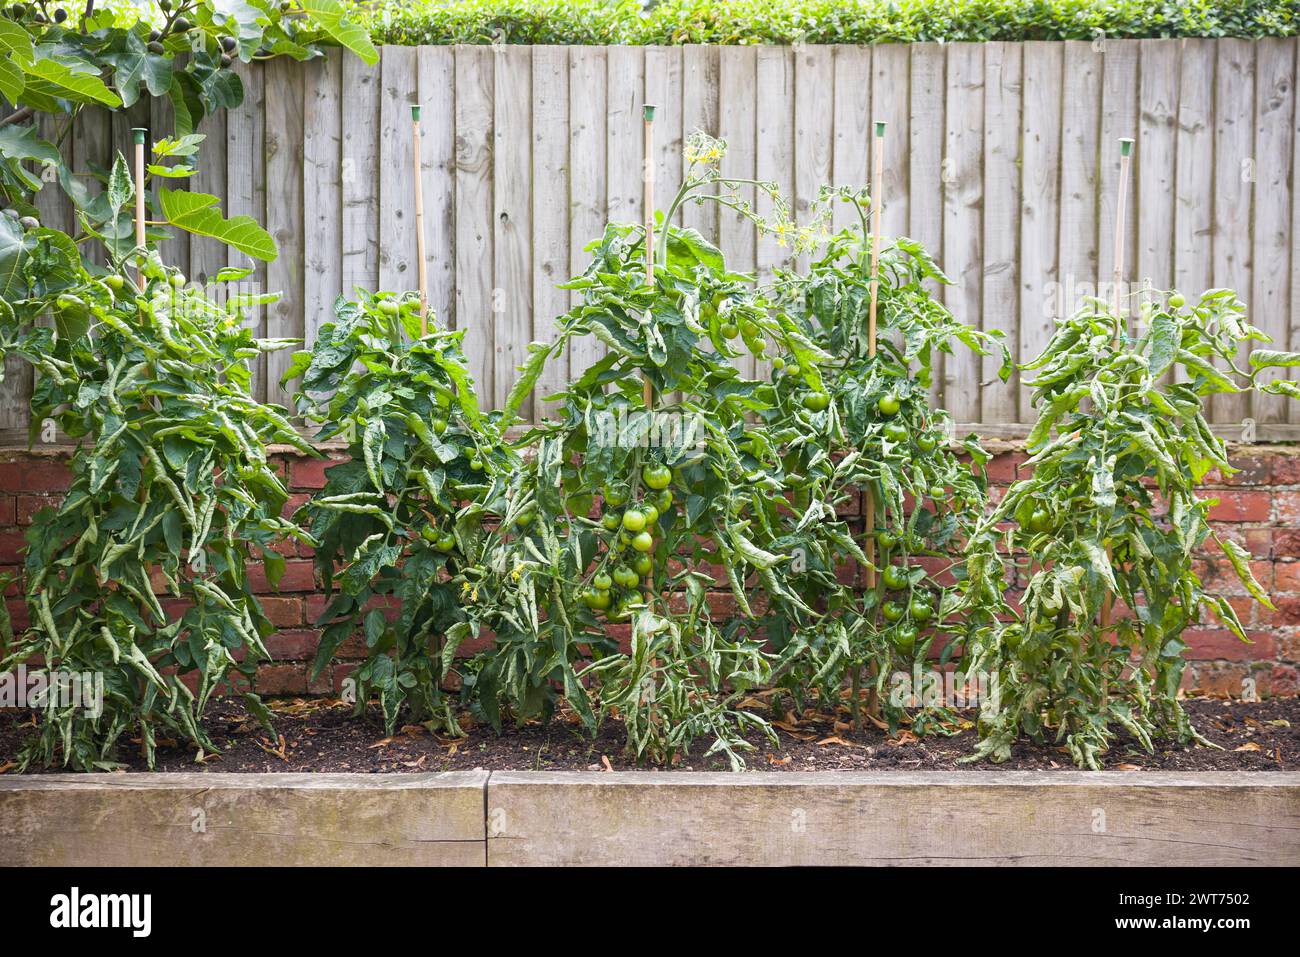 Piante di pomodoro con foglie ricciolate in una toppa vegetale. Ricci di foglie di pomodoro, un problema comune nei giardini del Regno Unito. Foto Stock